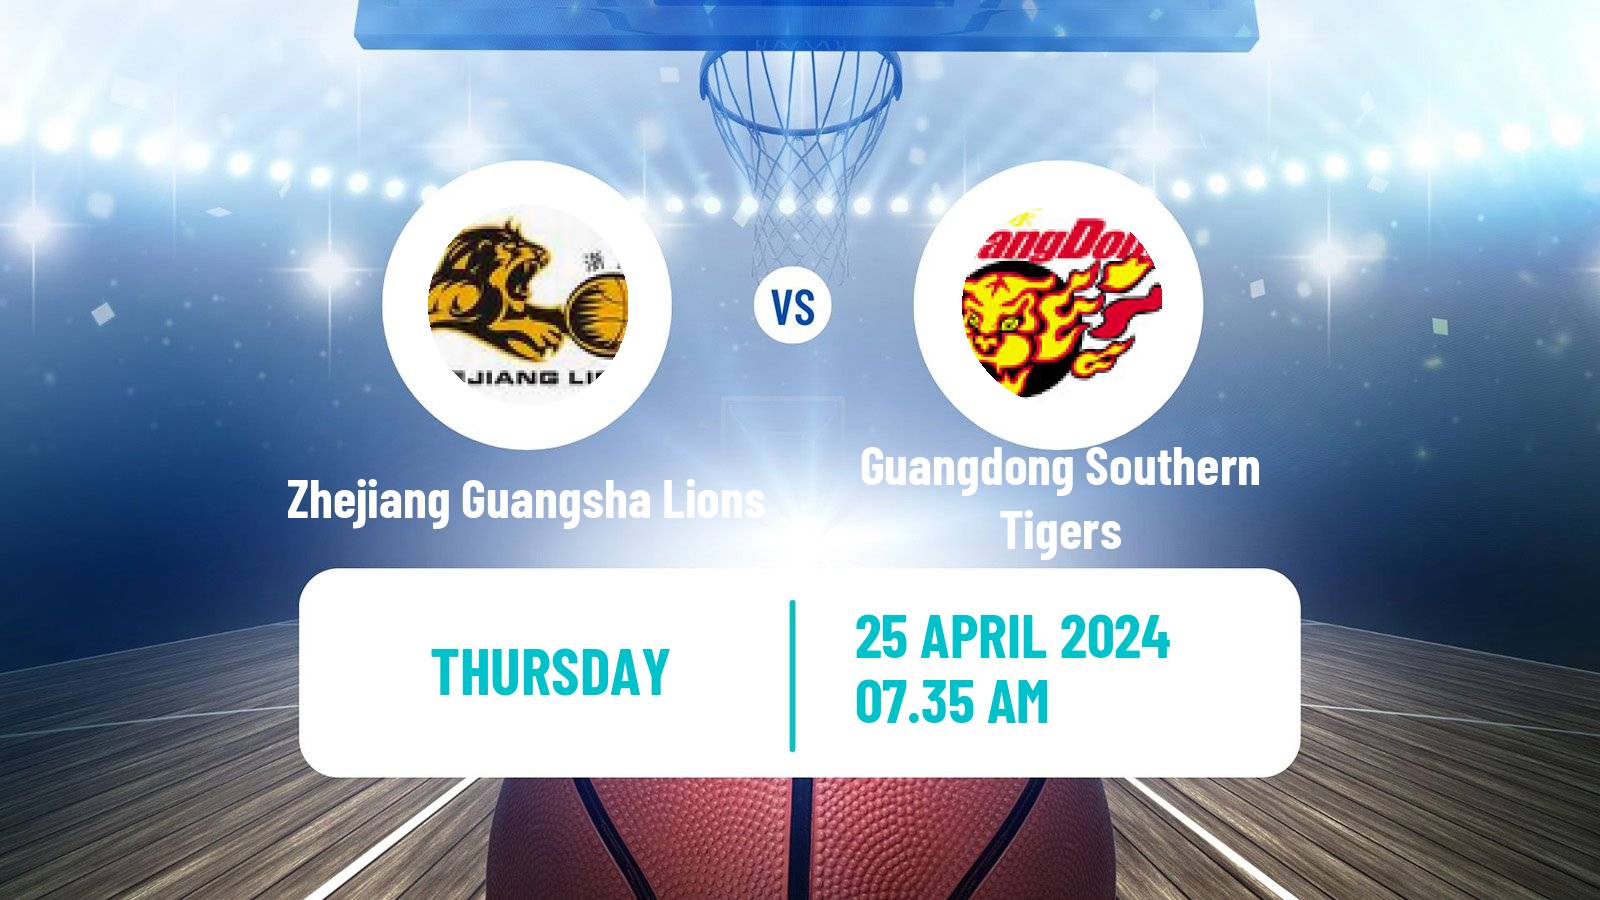 Basketball CBA Zhejiang Guangsha Lions - Guangdong Southern Tigers